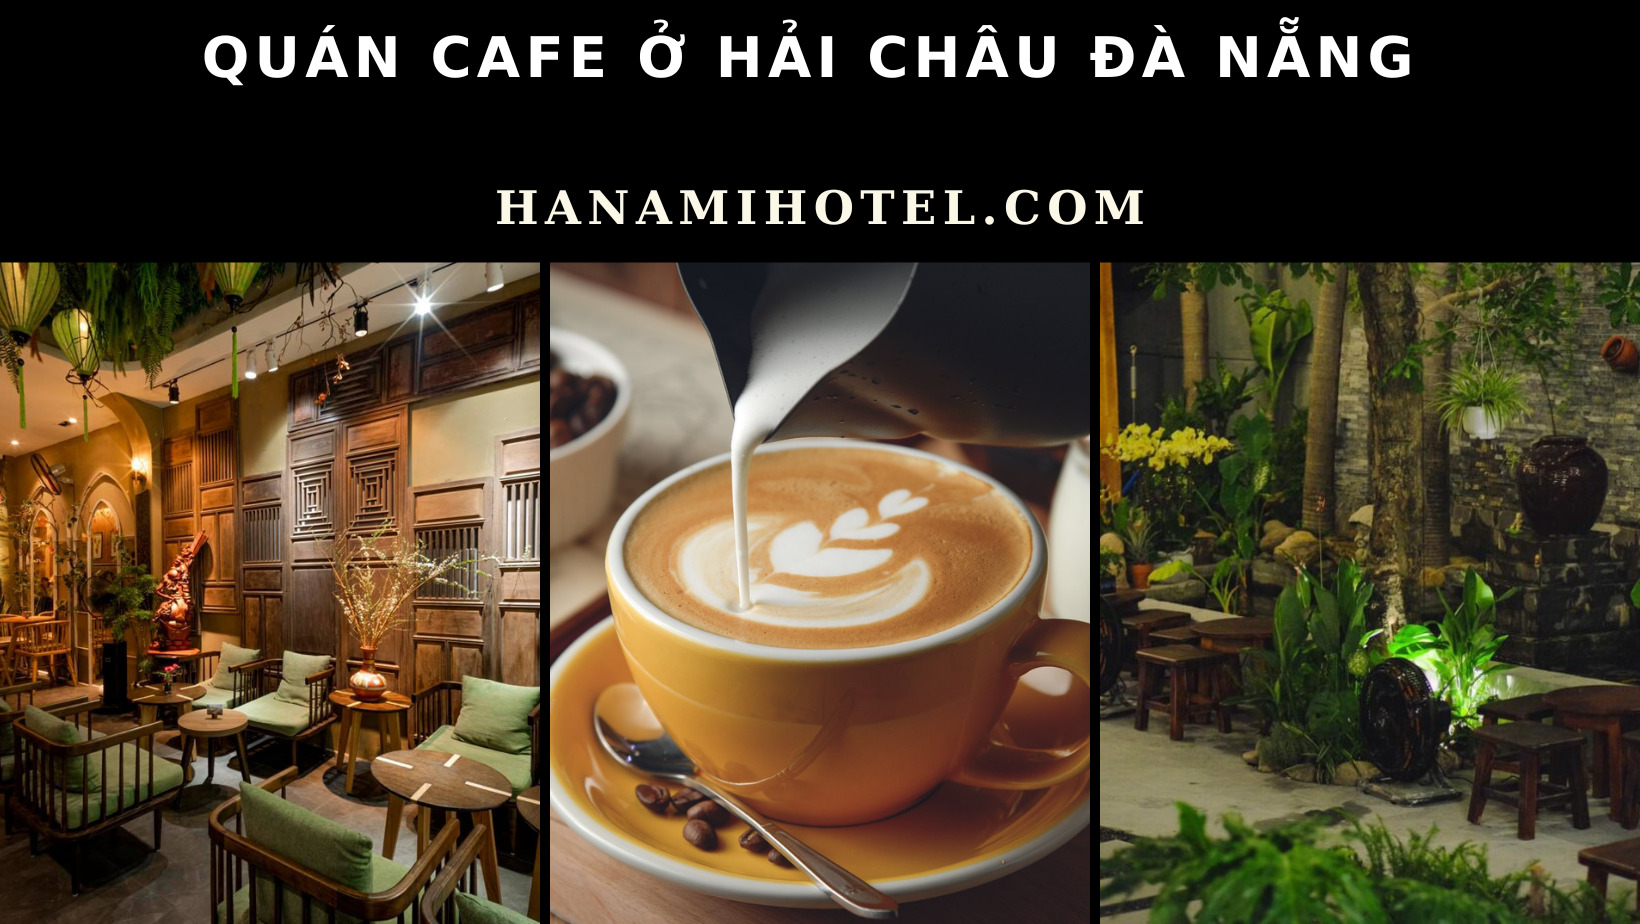 Quán cafe ở Hải Châu Đà Nẵng